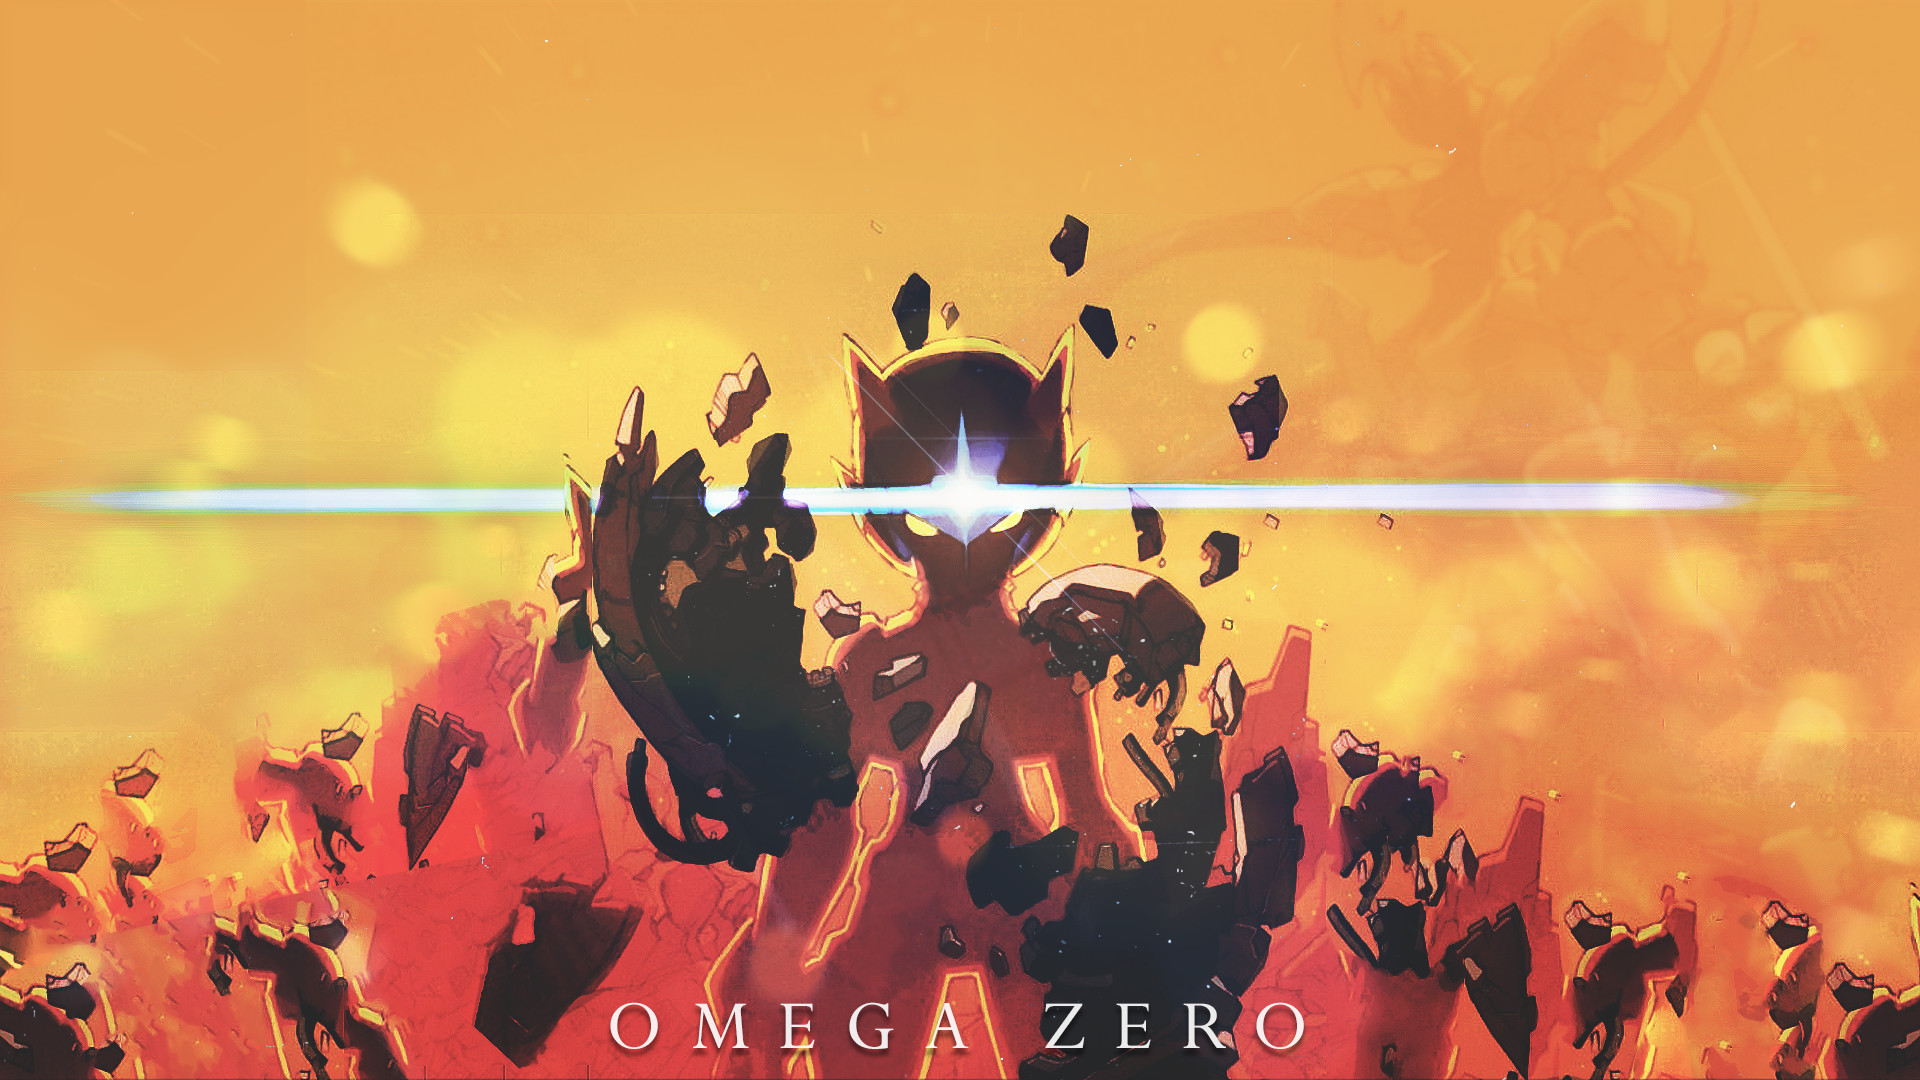 Omega Zero Wallpaper by RekaVM Omega Zero Wallpaper by RekaVM